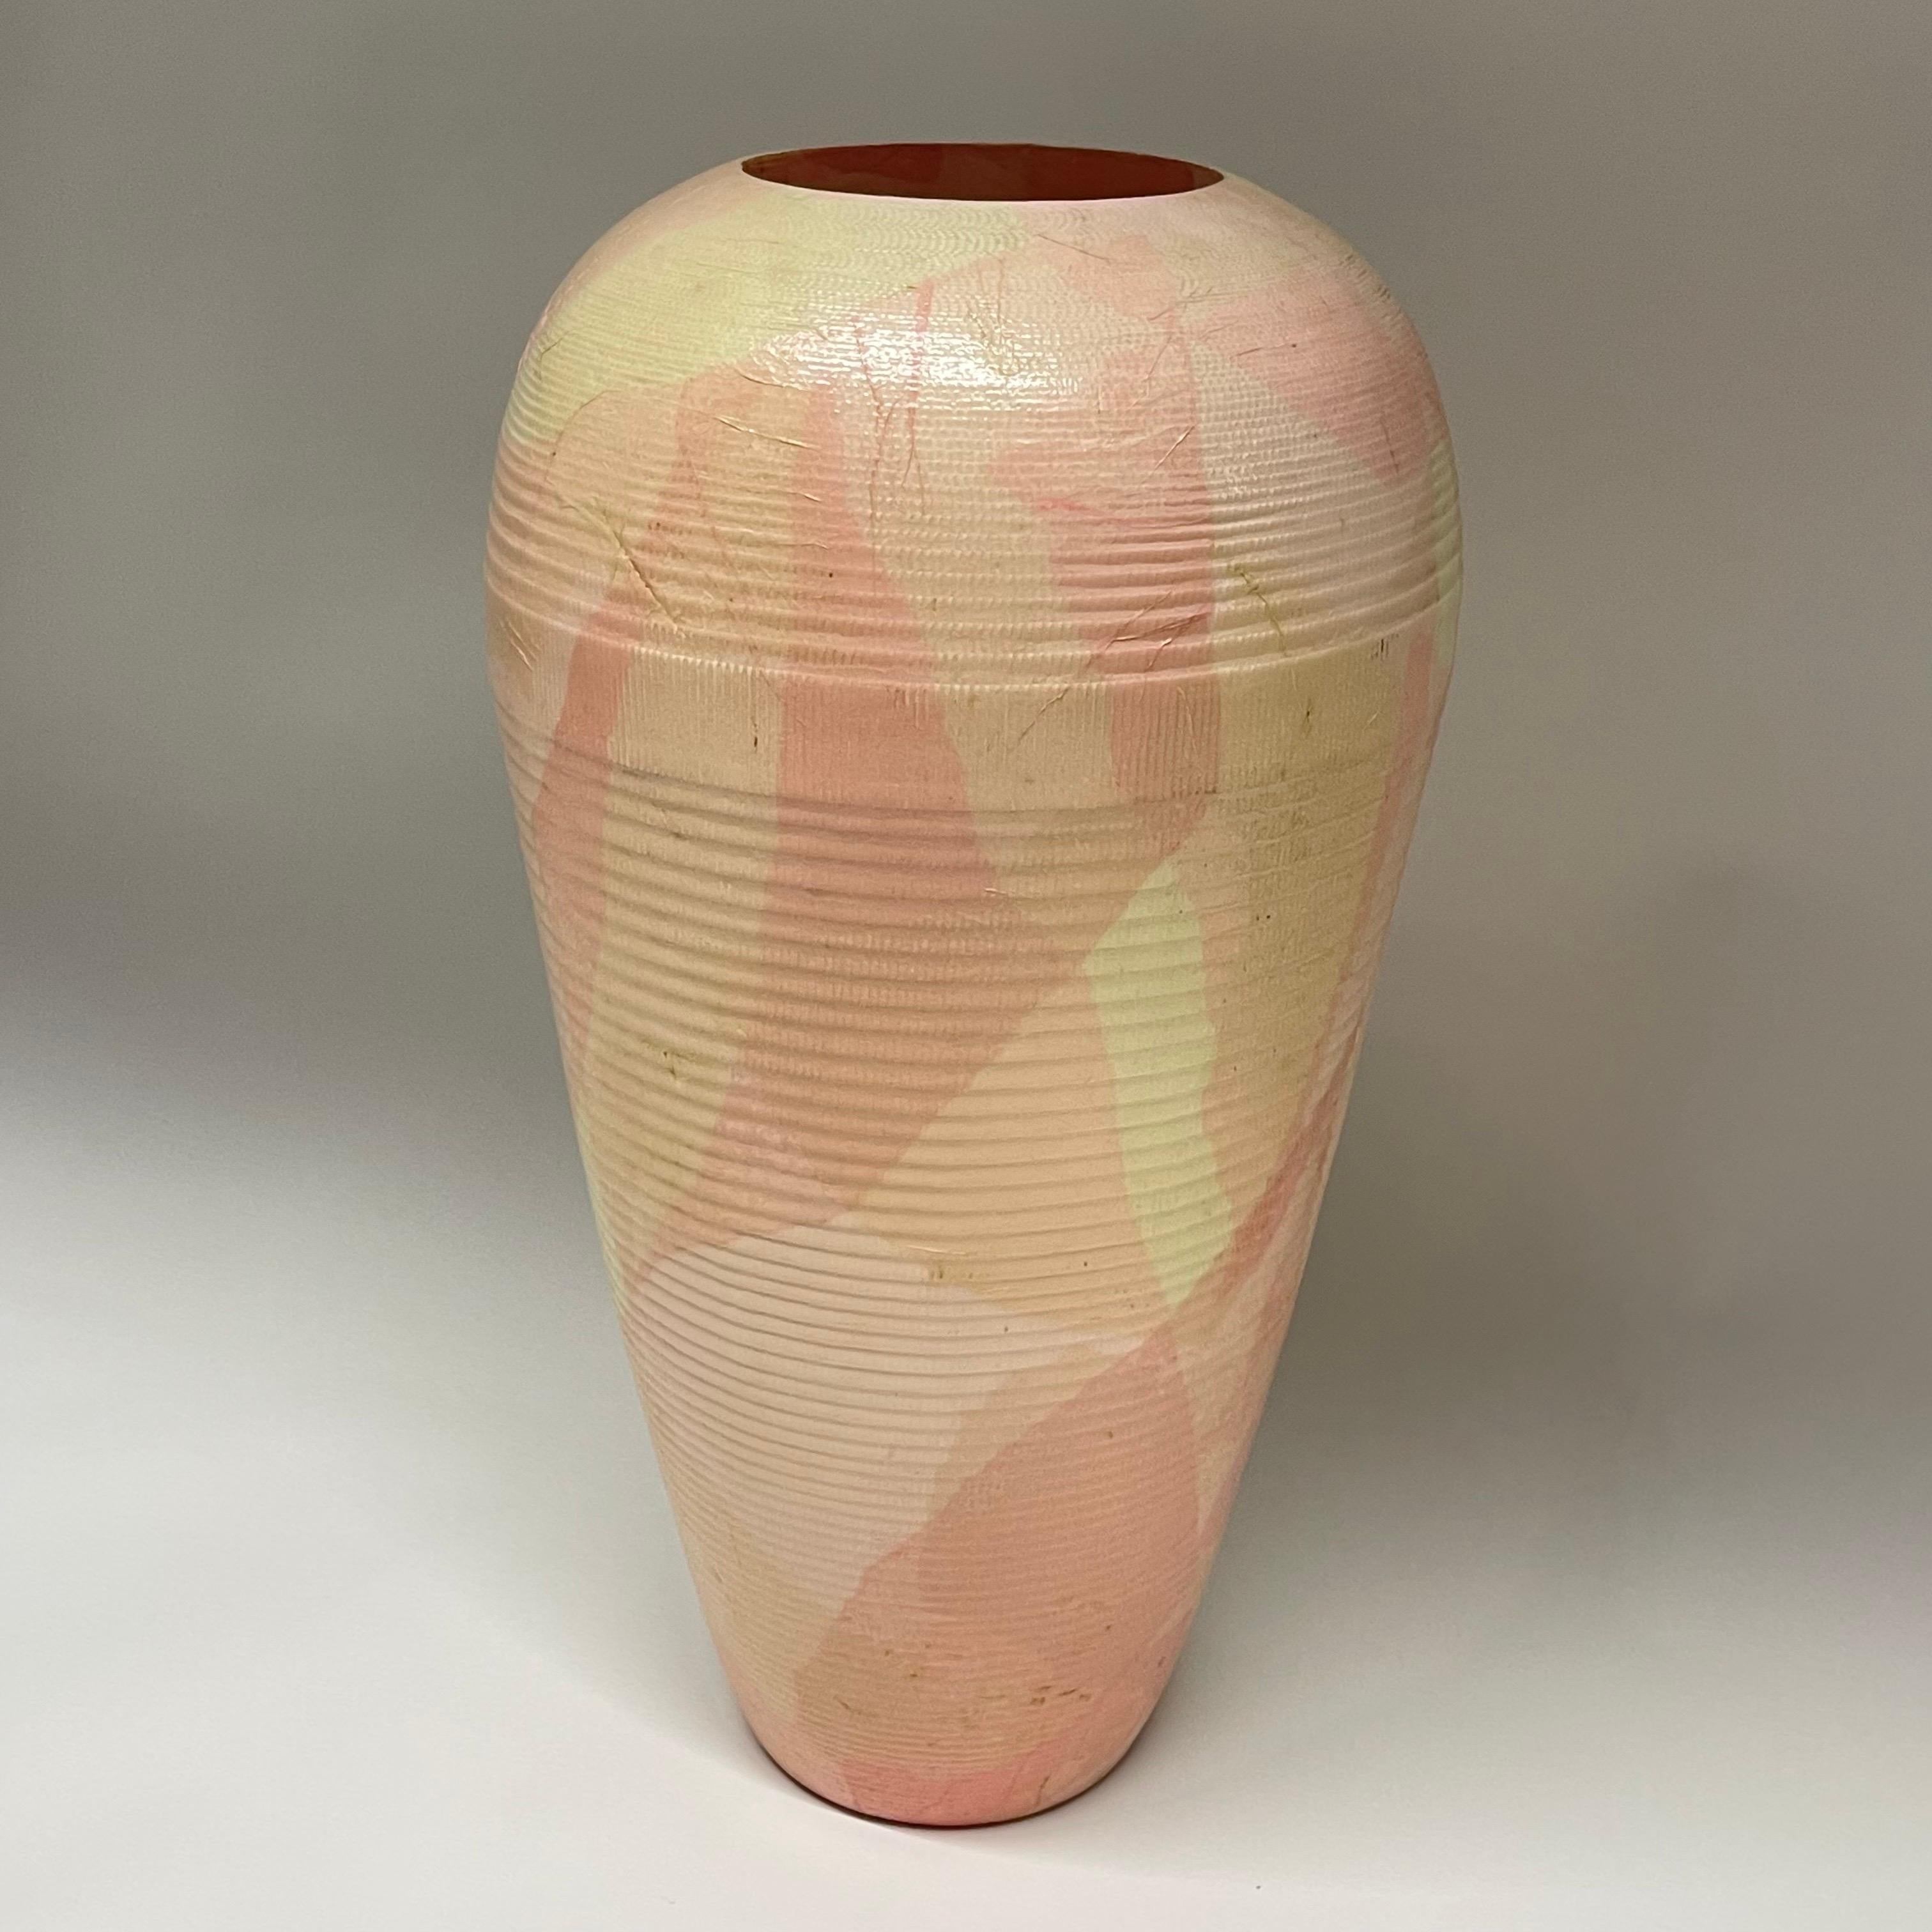 Vase sculpture décoratif post-moderne, réalisé en carton ondulé peint et laqué à la main, signé par l'artiste, produit par Flute, Chicago, 1989.